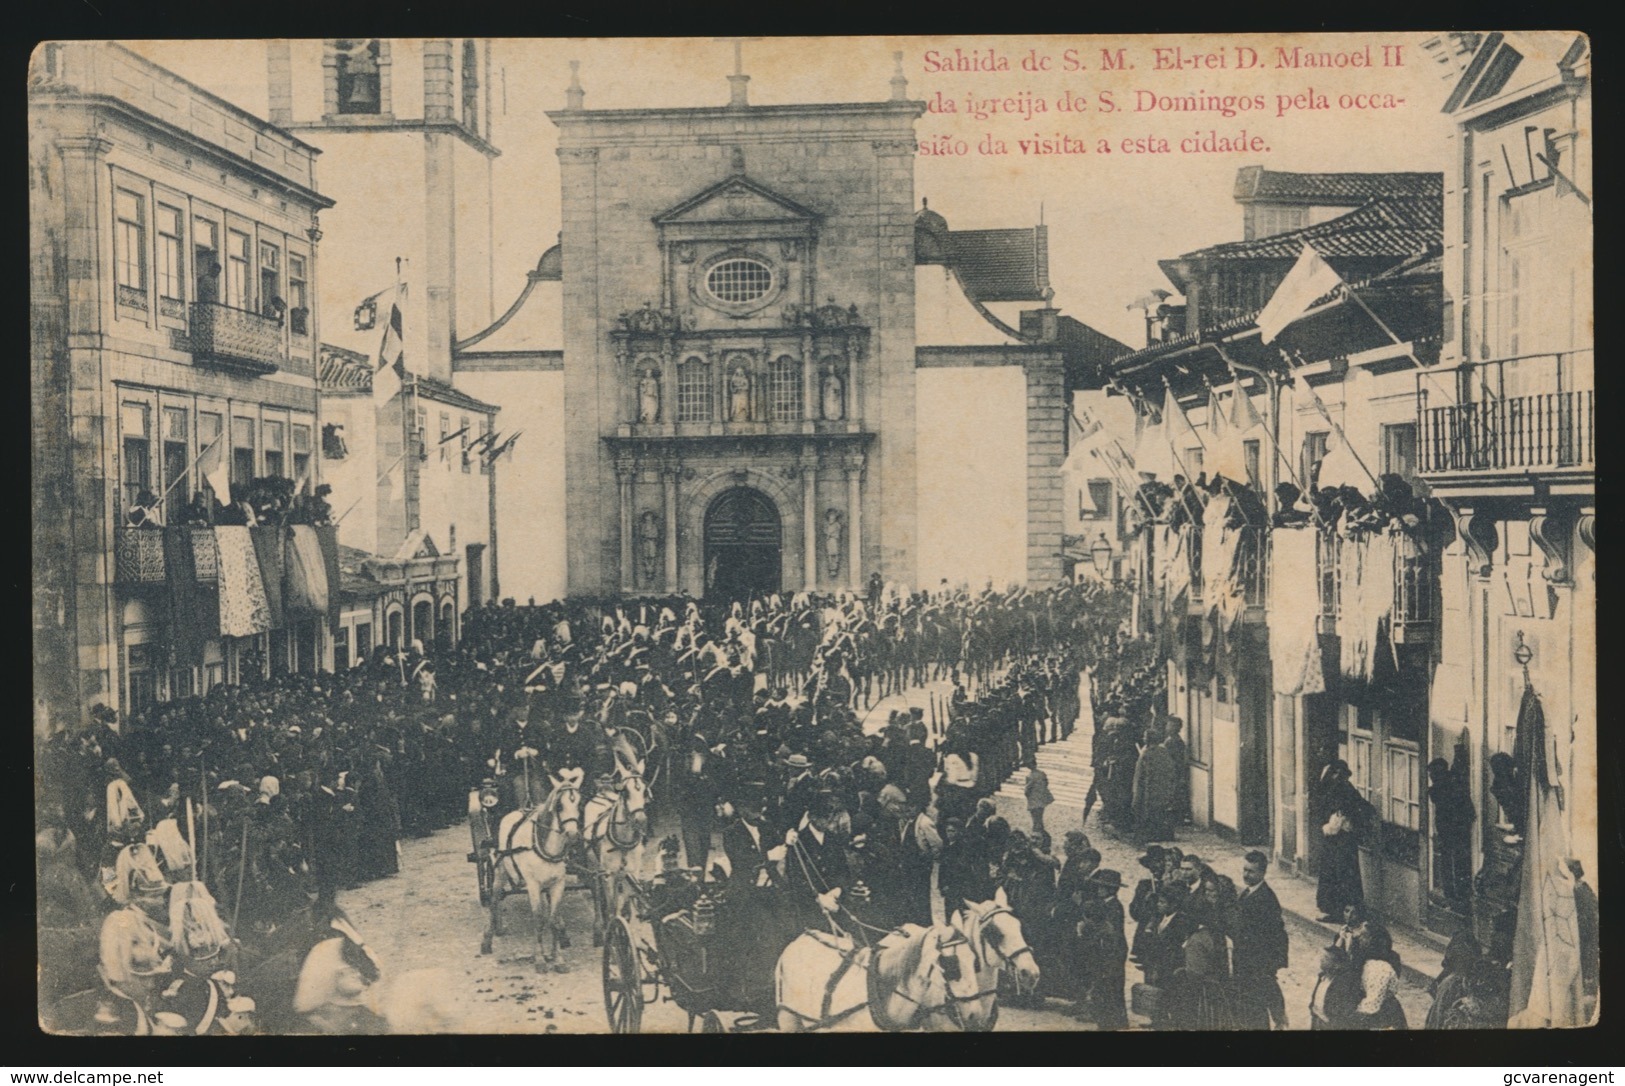 PORTUGAL  - SAHIDA DE S.M.EL REI D.MANOEL II DA IGREIJA DE S.DOMINGOS PELA OCCASIAO DA VISITA A ESTA CIDADE - Lisboa